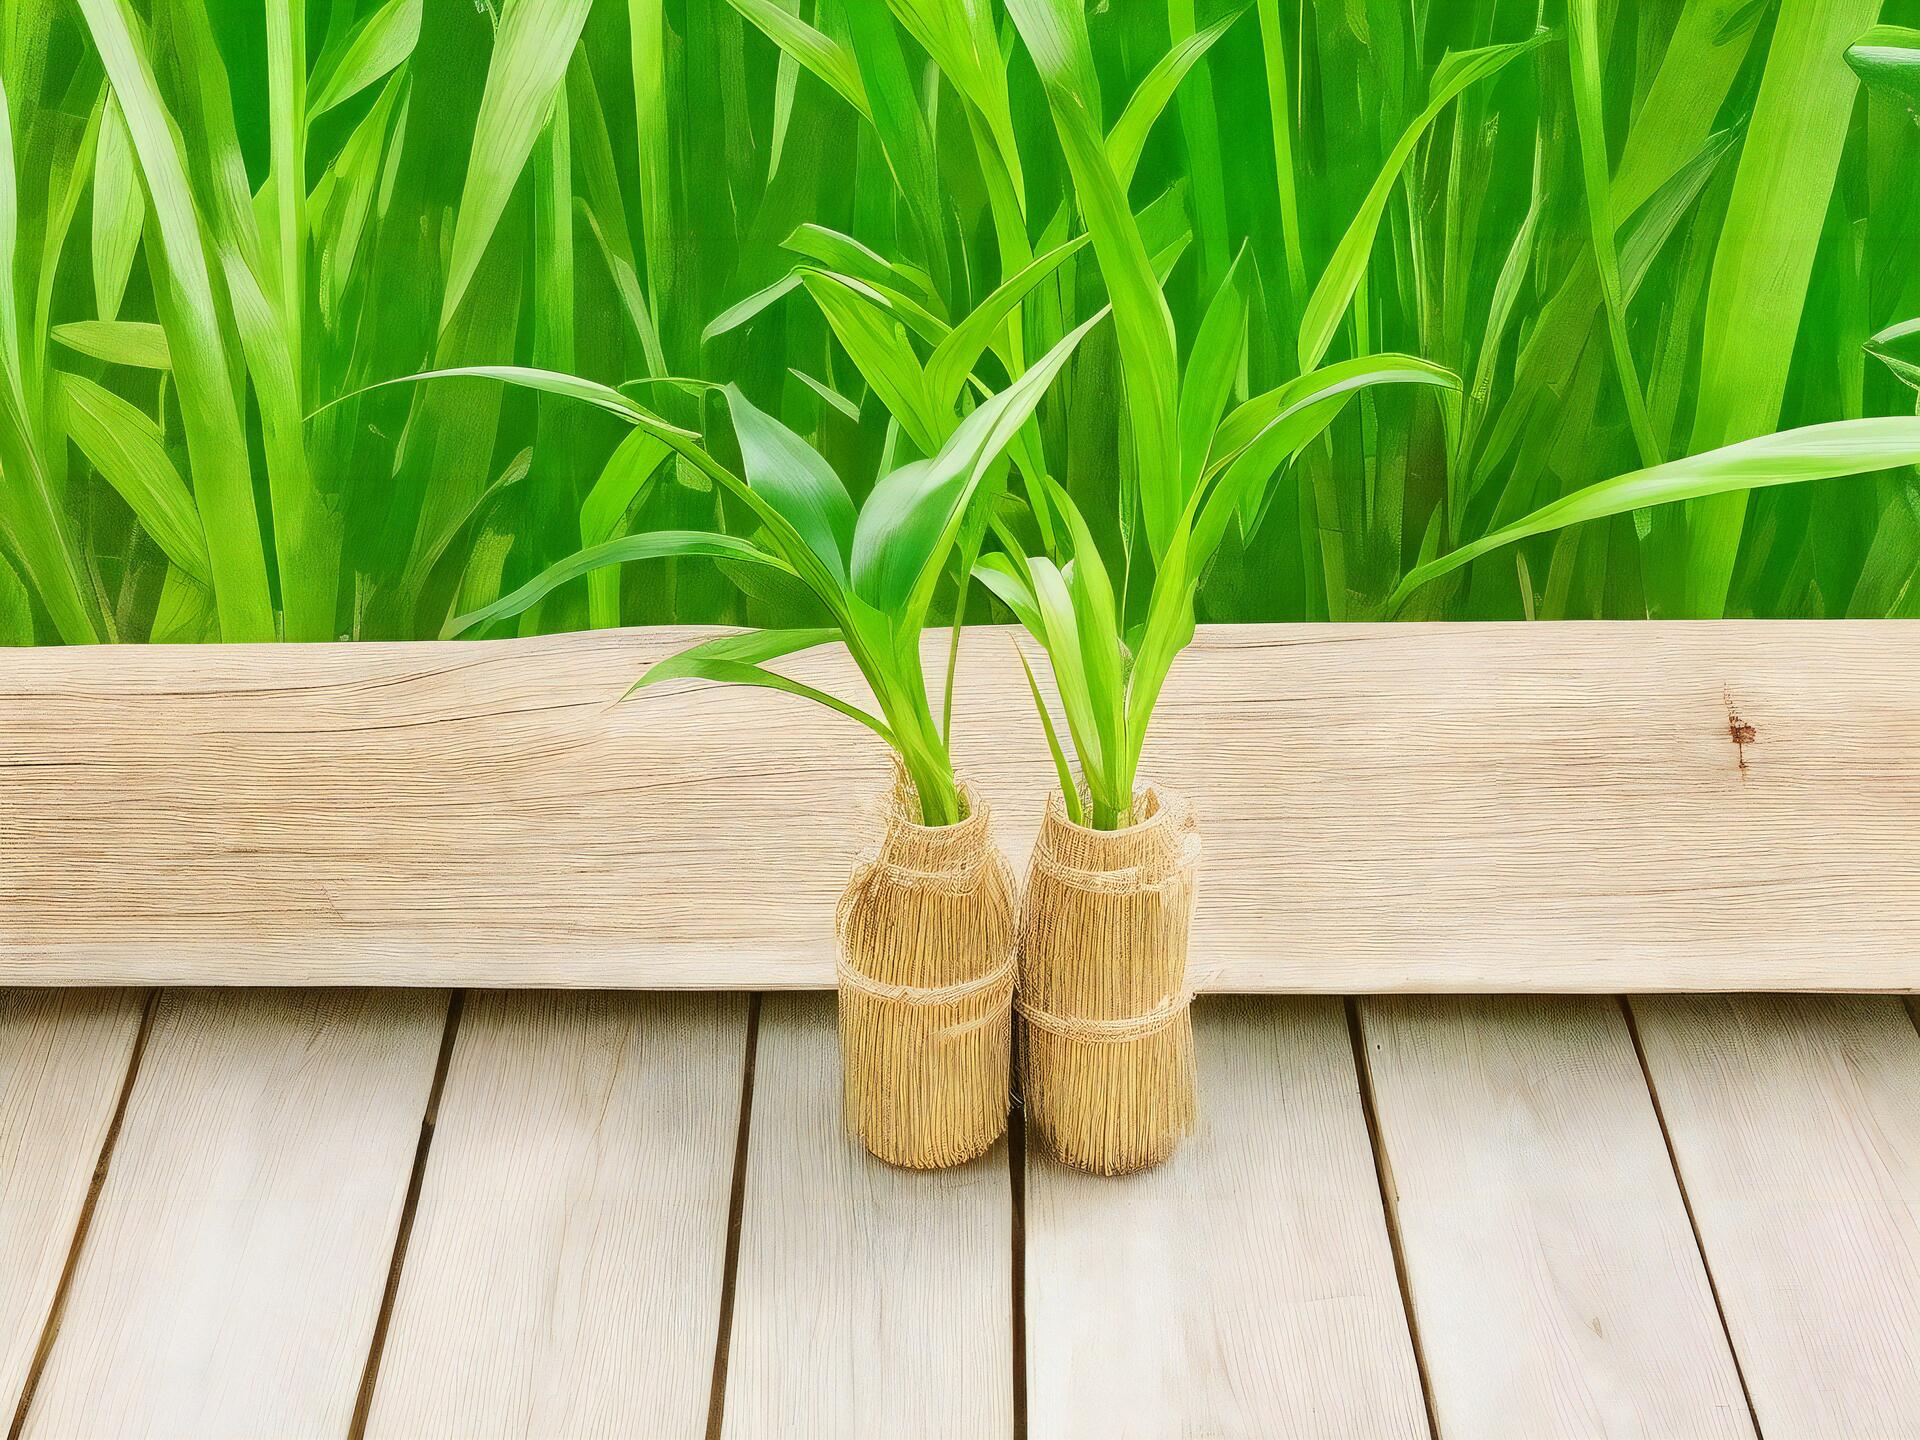 Dwie sadzonki bambusa w małych doniczkach na drewnianych deskach